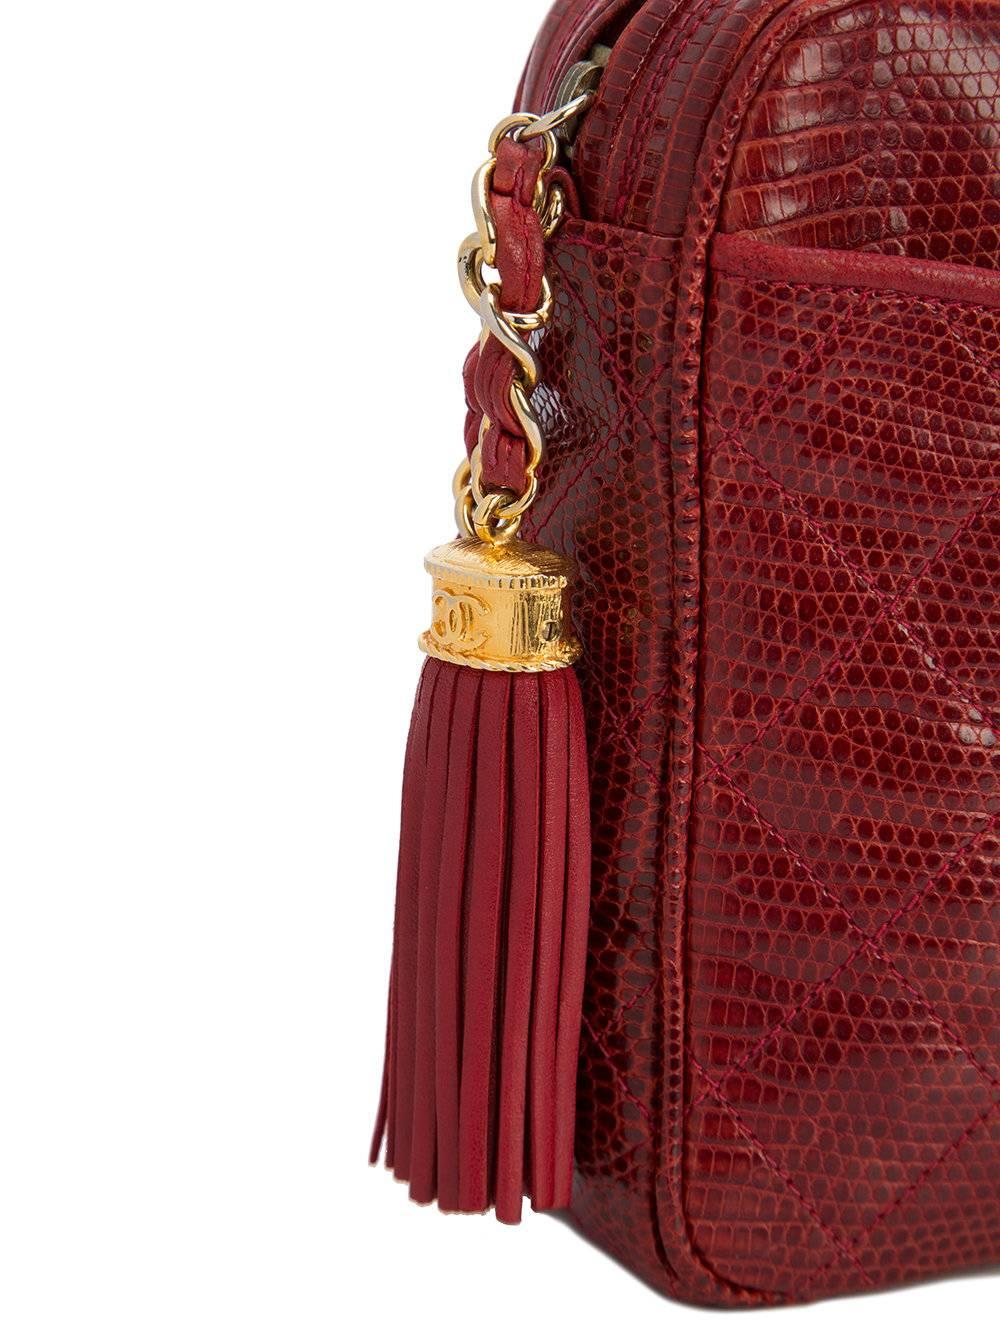 Chanel Red Lizard Leather Tassel Evening Camera Shoulder Bag 1